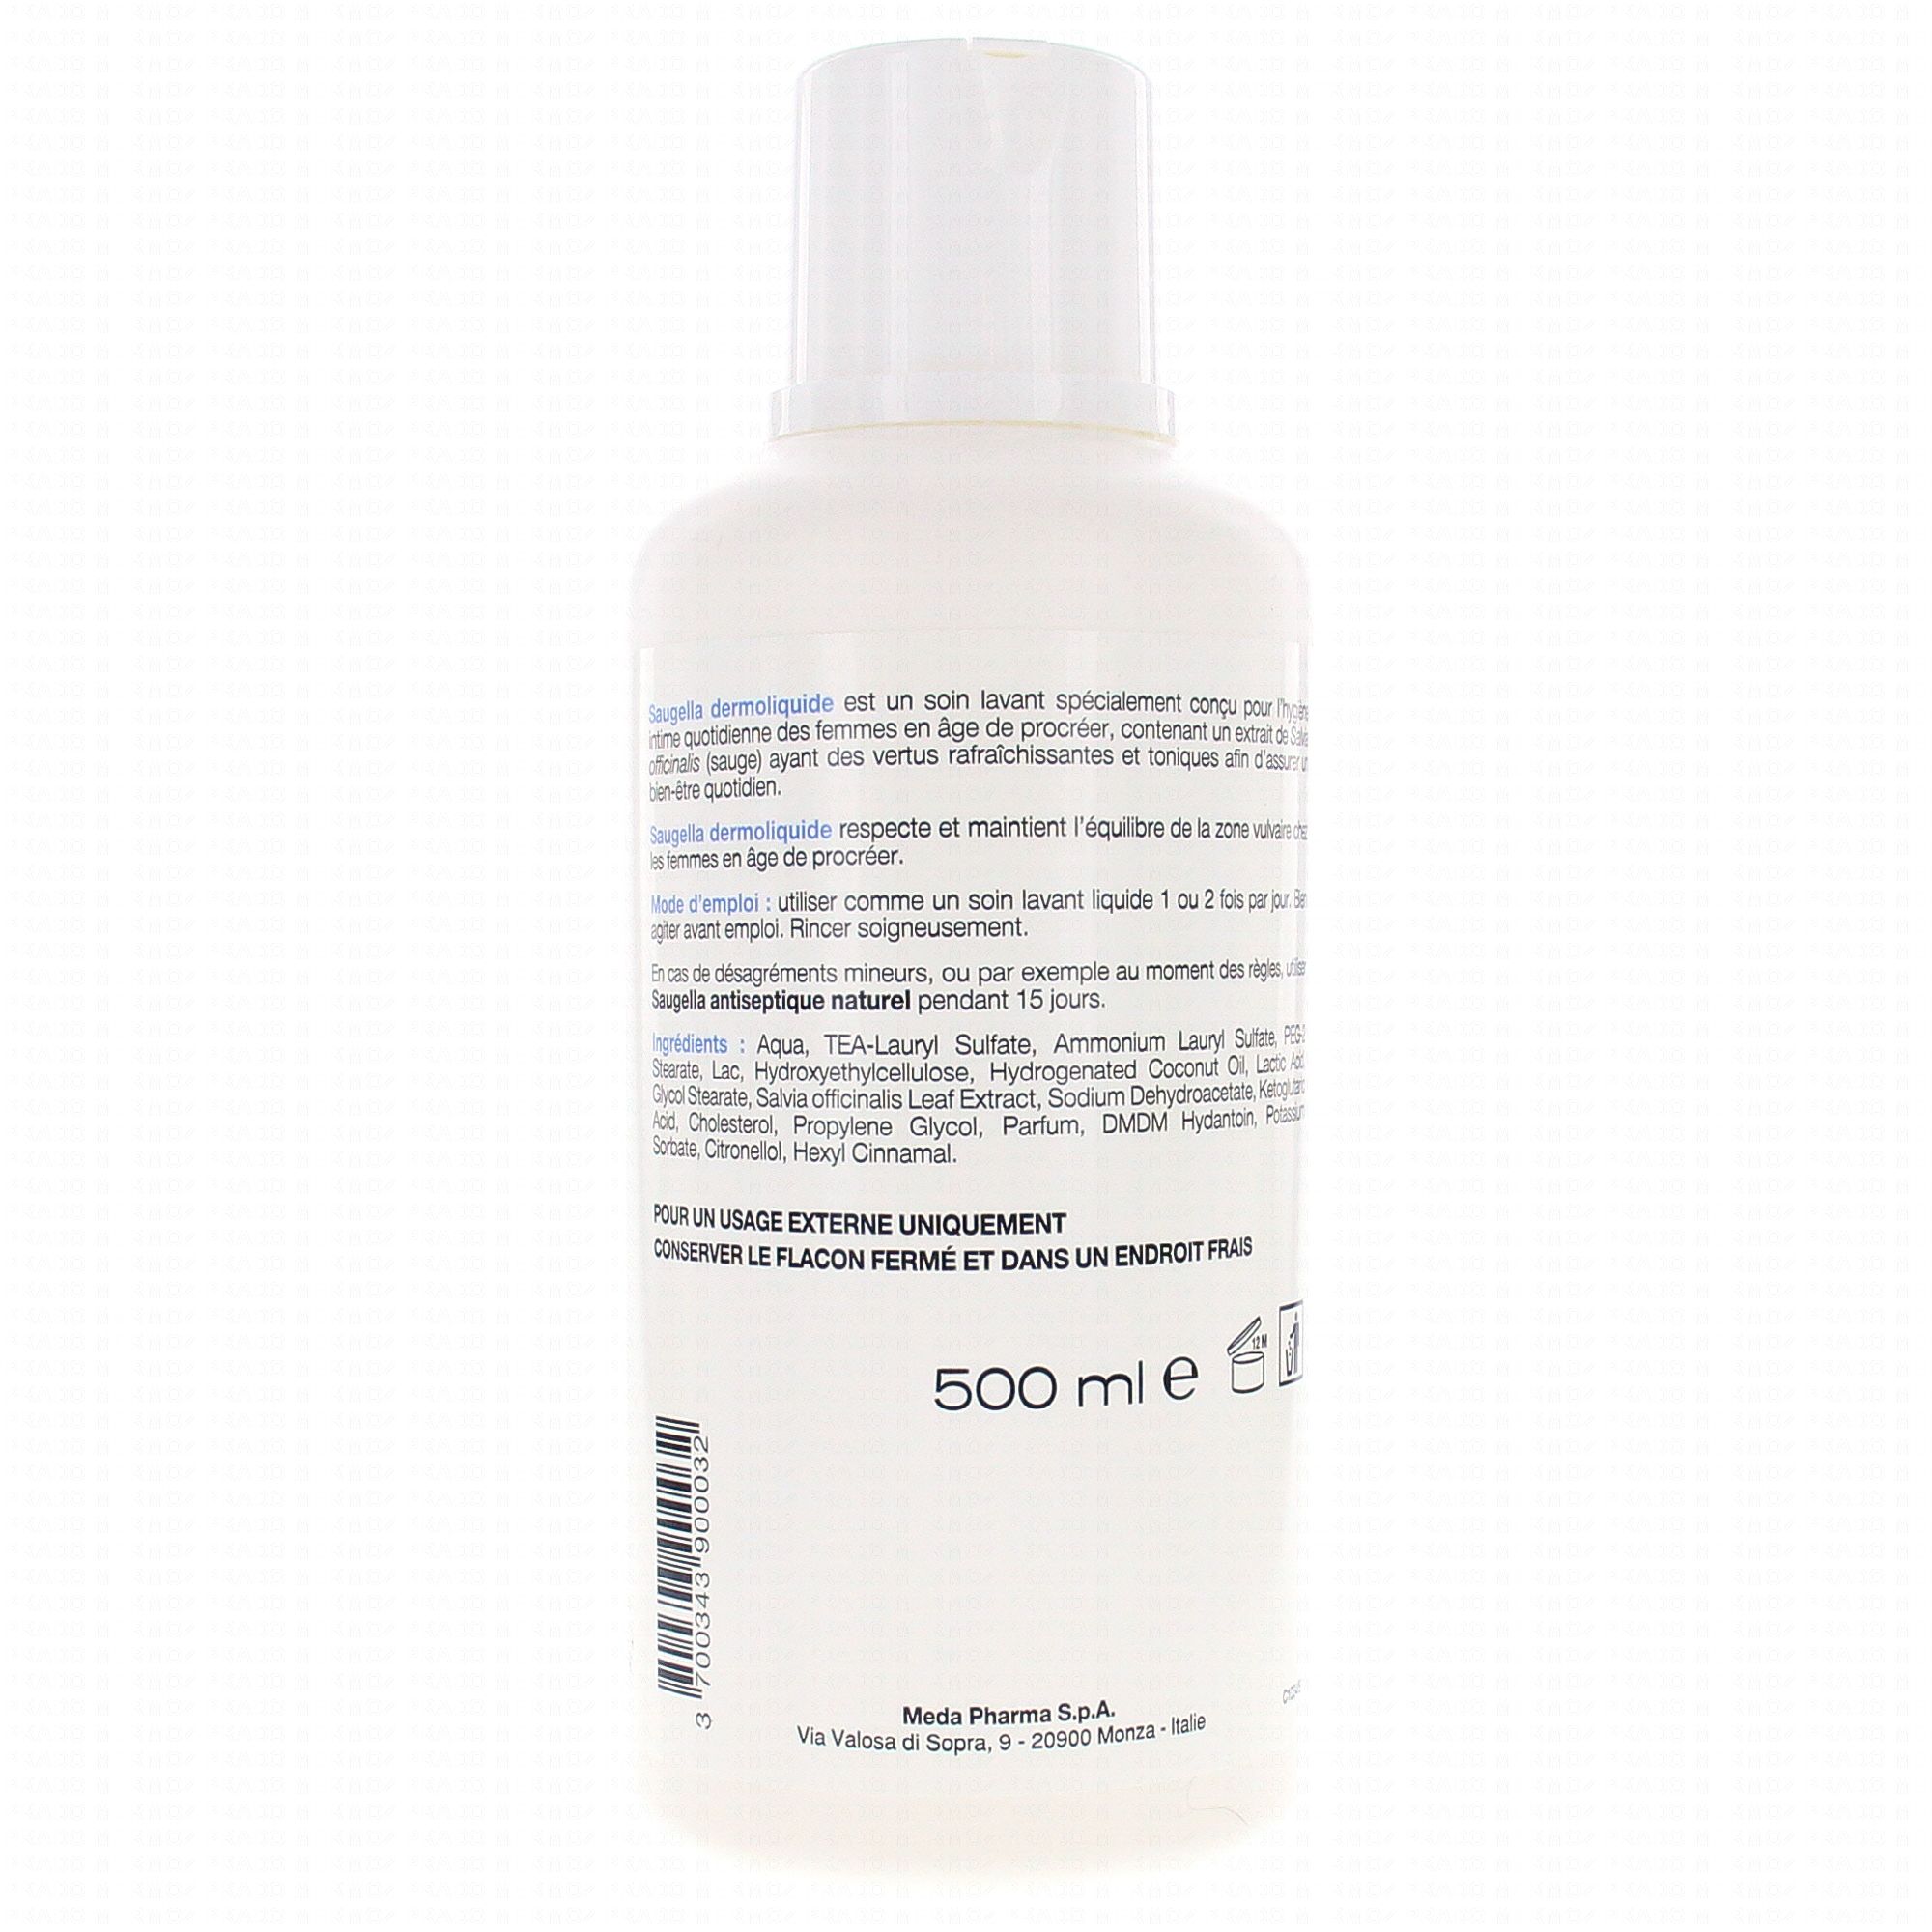 SAUGELLA Dermoliquide emulsion flacon 500ml - Pharmacie Prado Mermoz